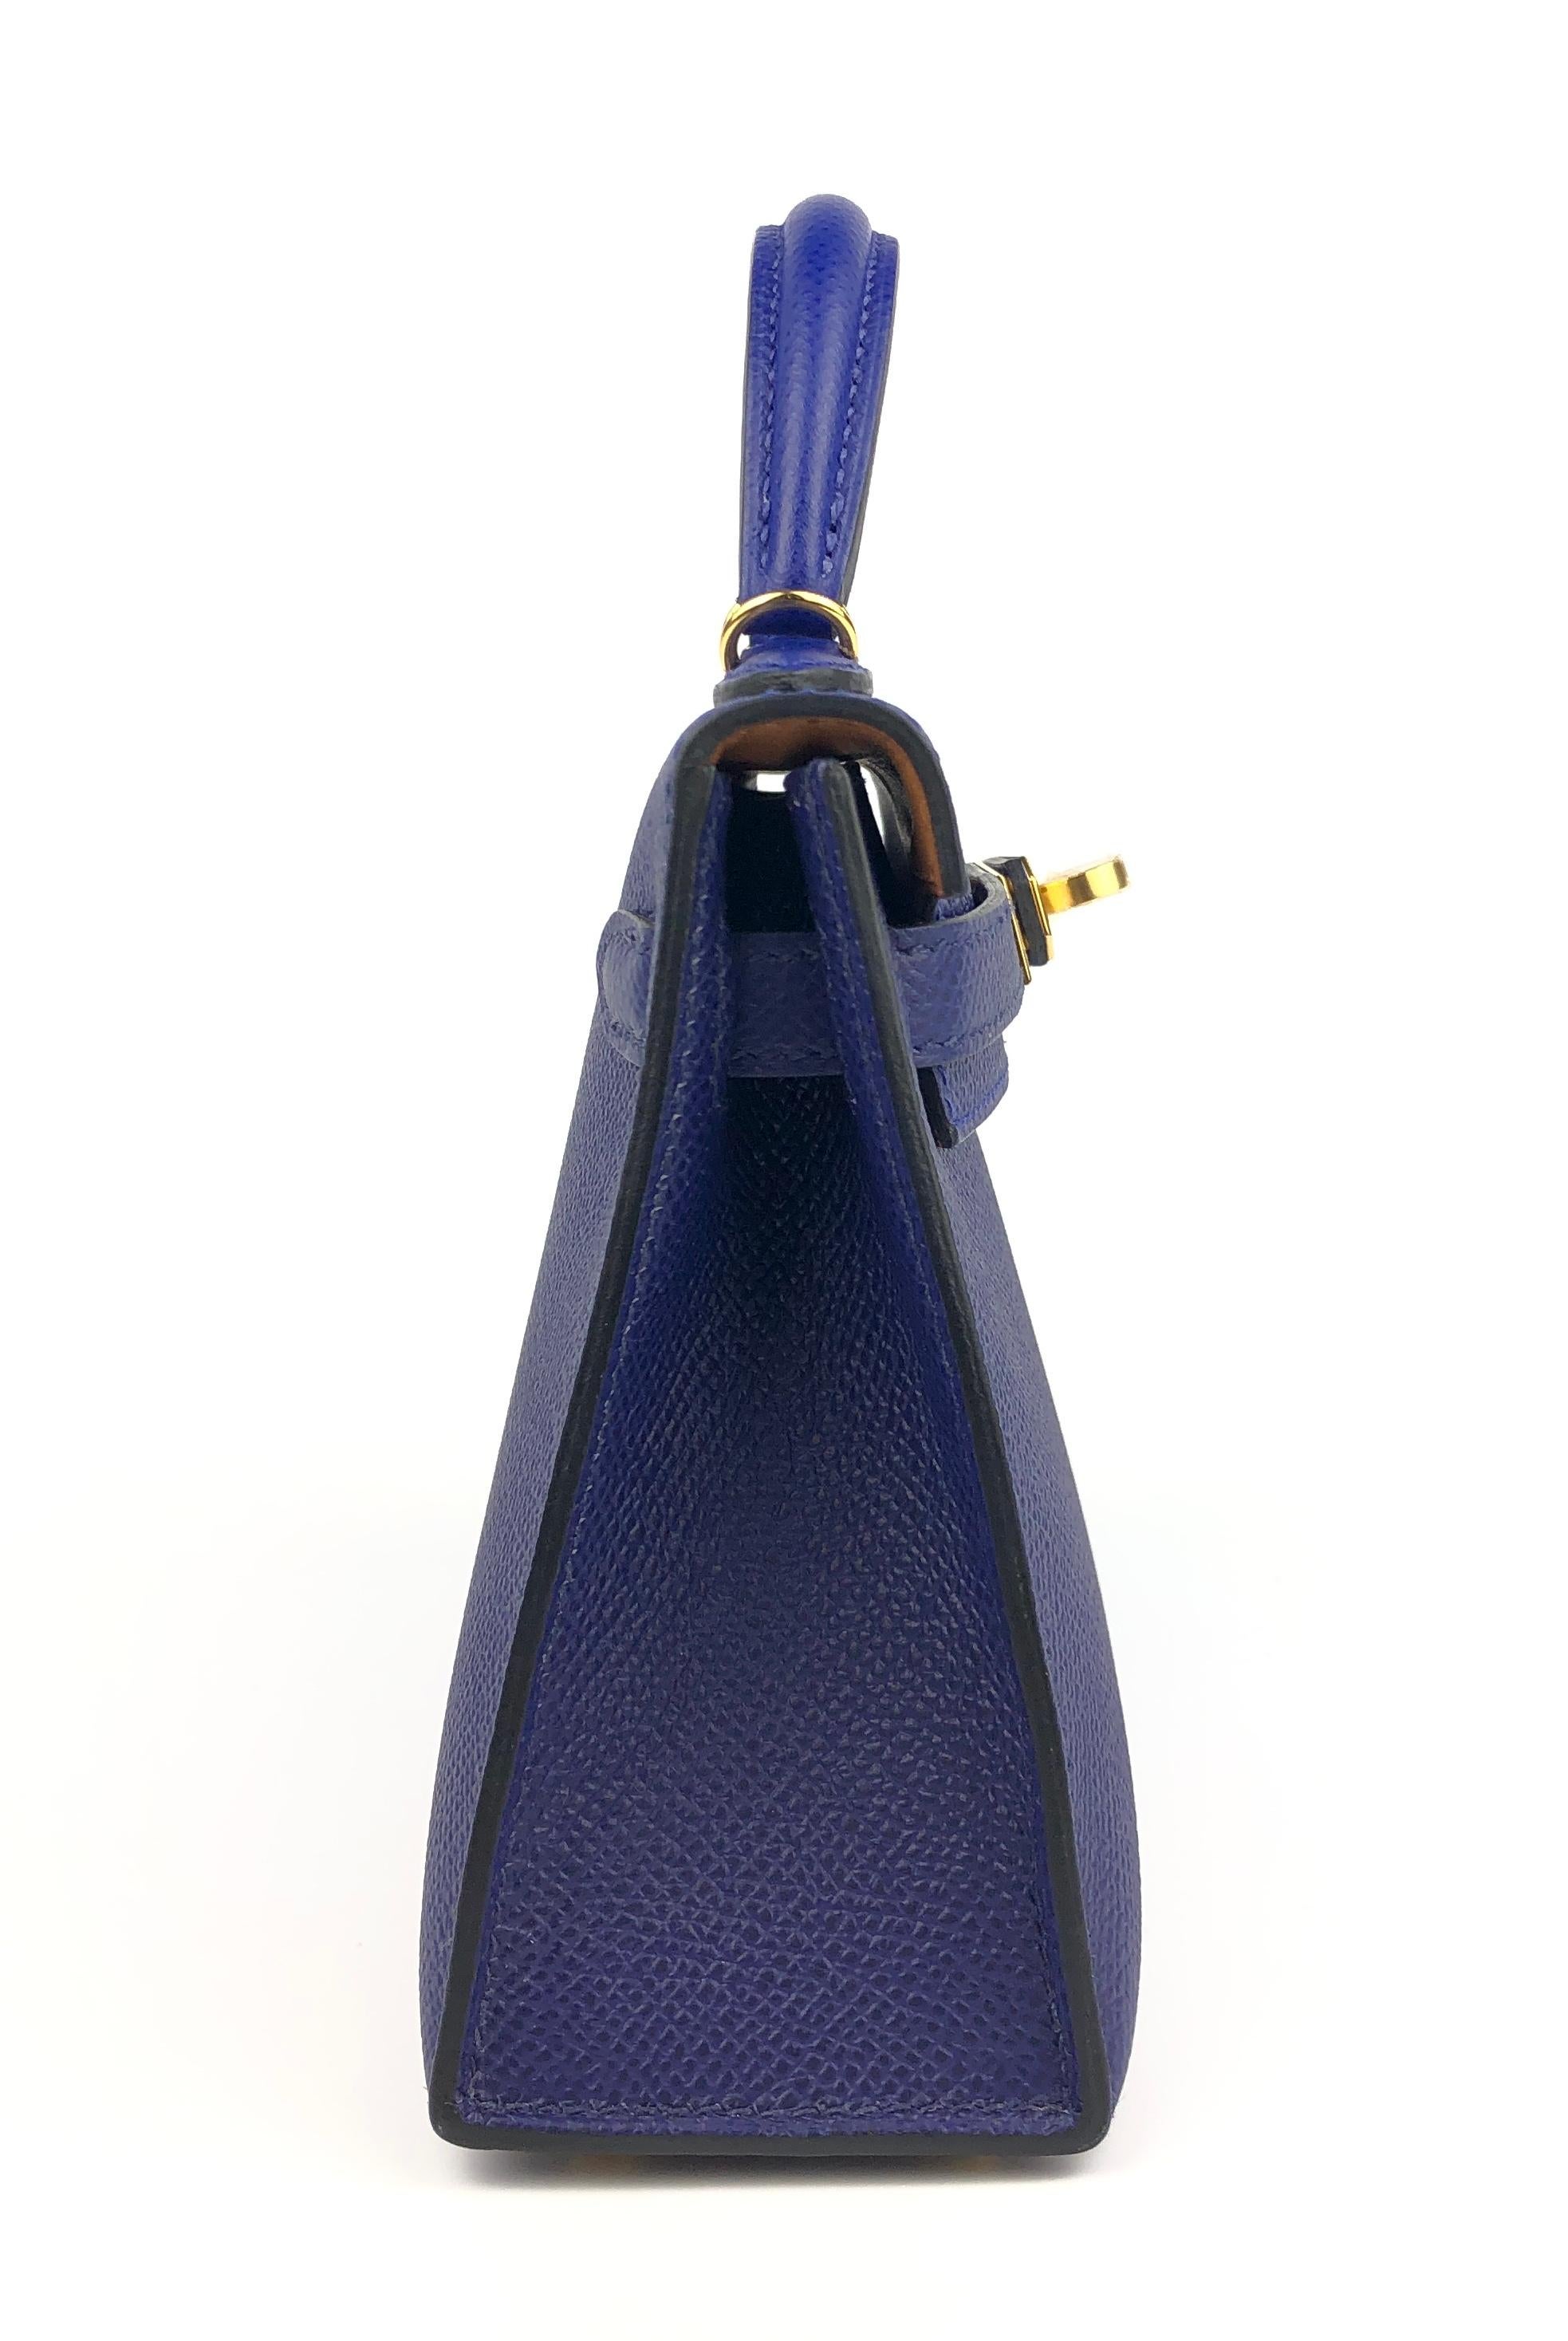 Sac Hermès Kelly Mini 20 tricolore bleu électrique encre or Epsom Nouveau  5